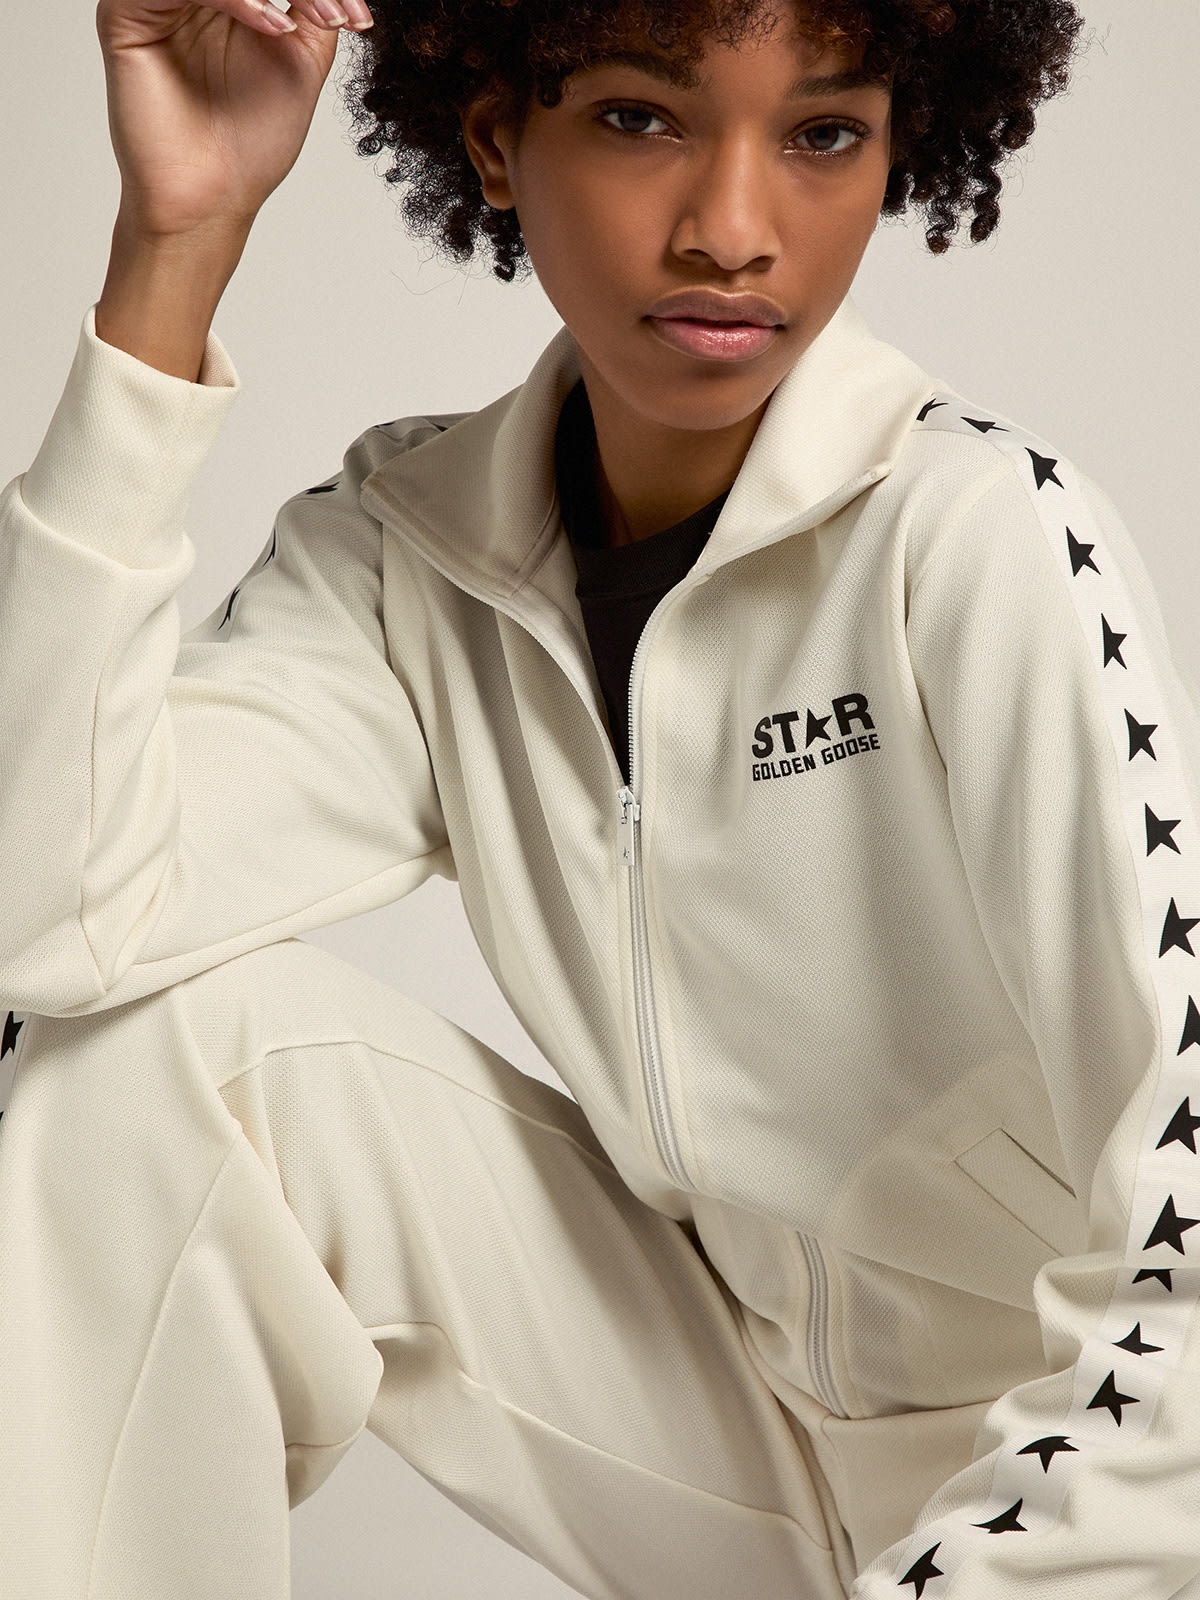 Women’s white zipped sweatshirt with white strip and black stars - 4